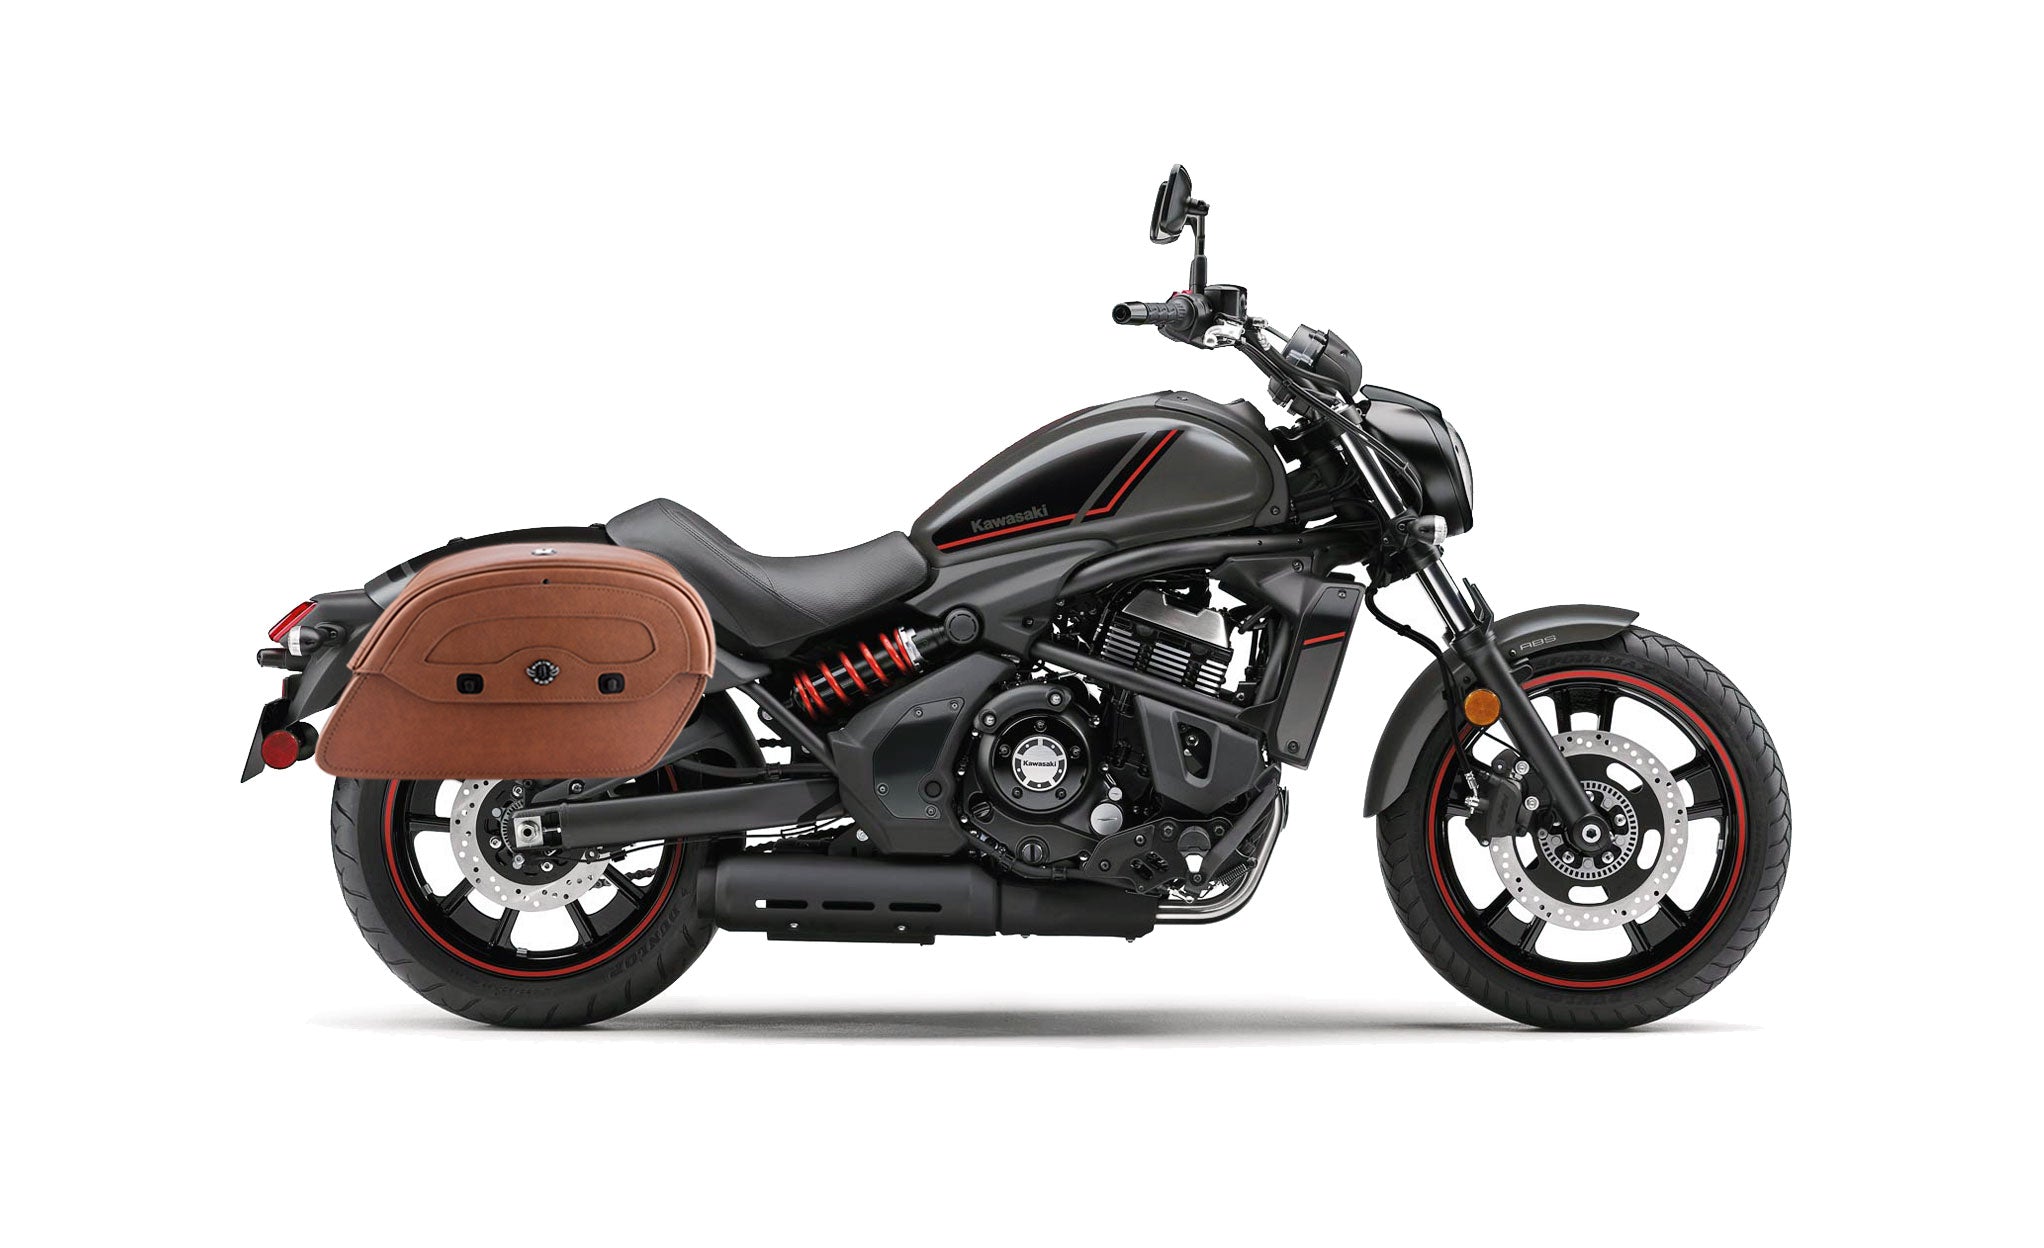 Viking Warrior Brown Large Kawasaki Vulcan S Leather Motorcycle Saddlebags Bag on Bike View @expand